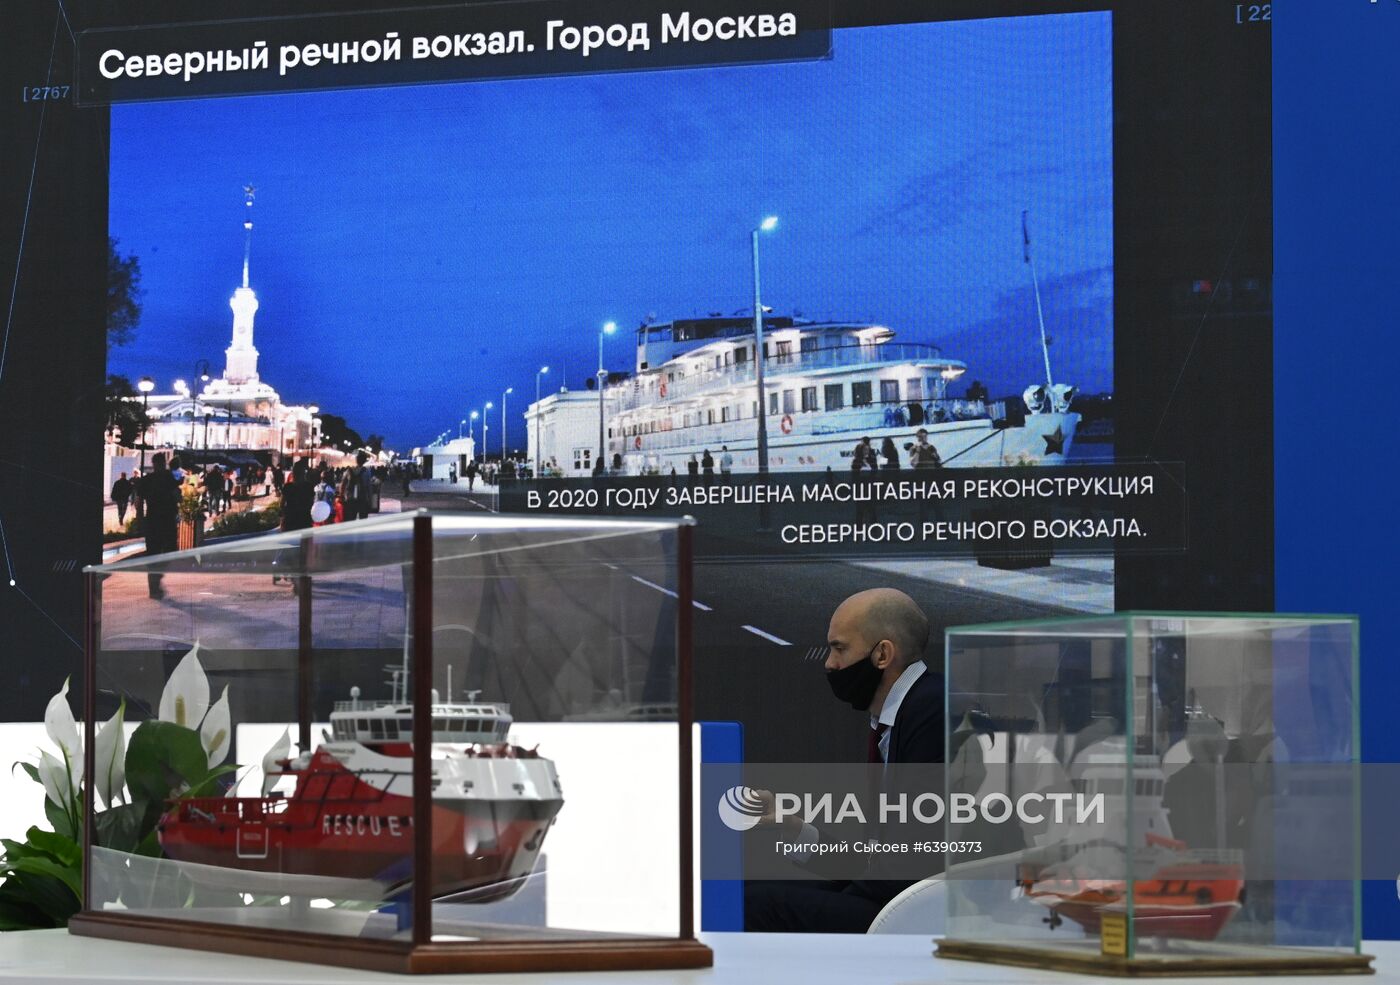 Международный форум и выставка "Транспорт России"